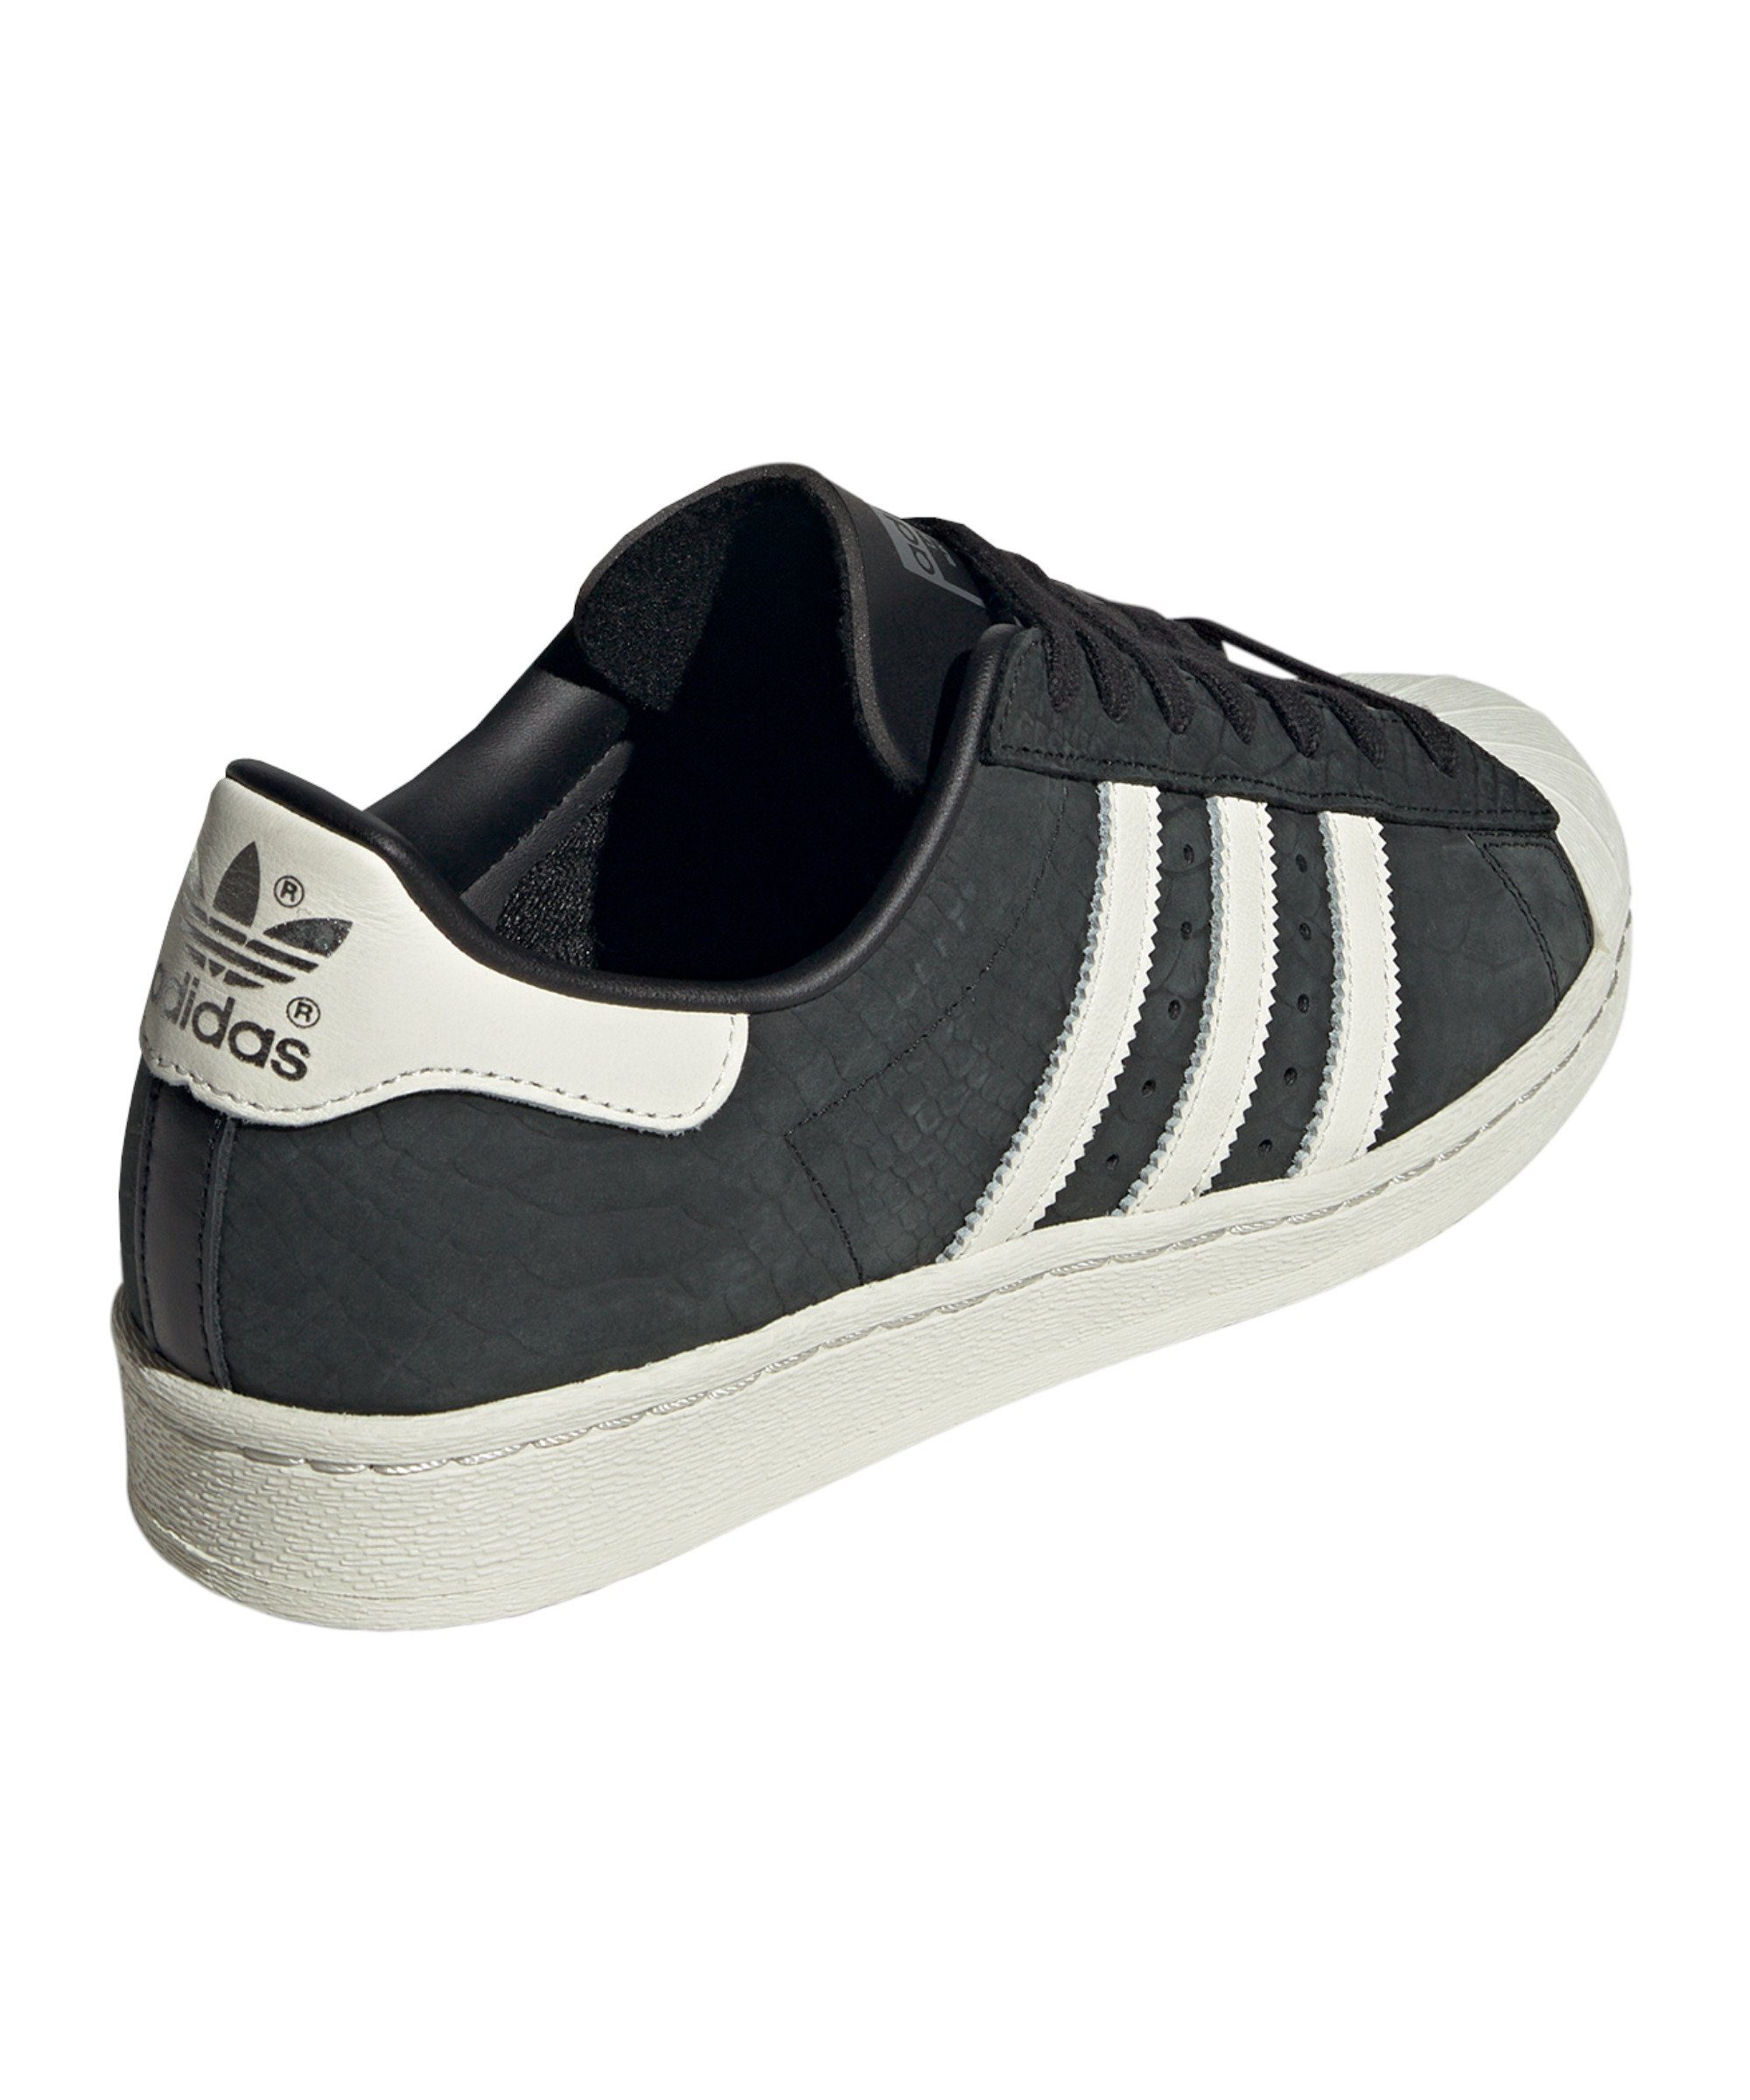 Originals Superstar 82 adidas Sneaker schwarzweissschwarz